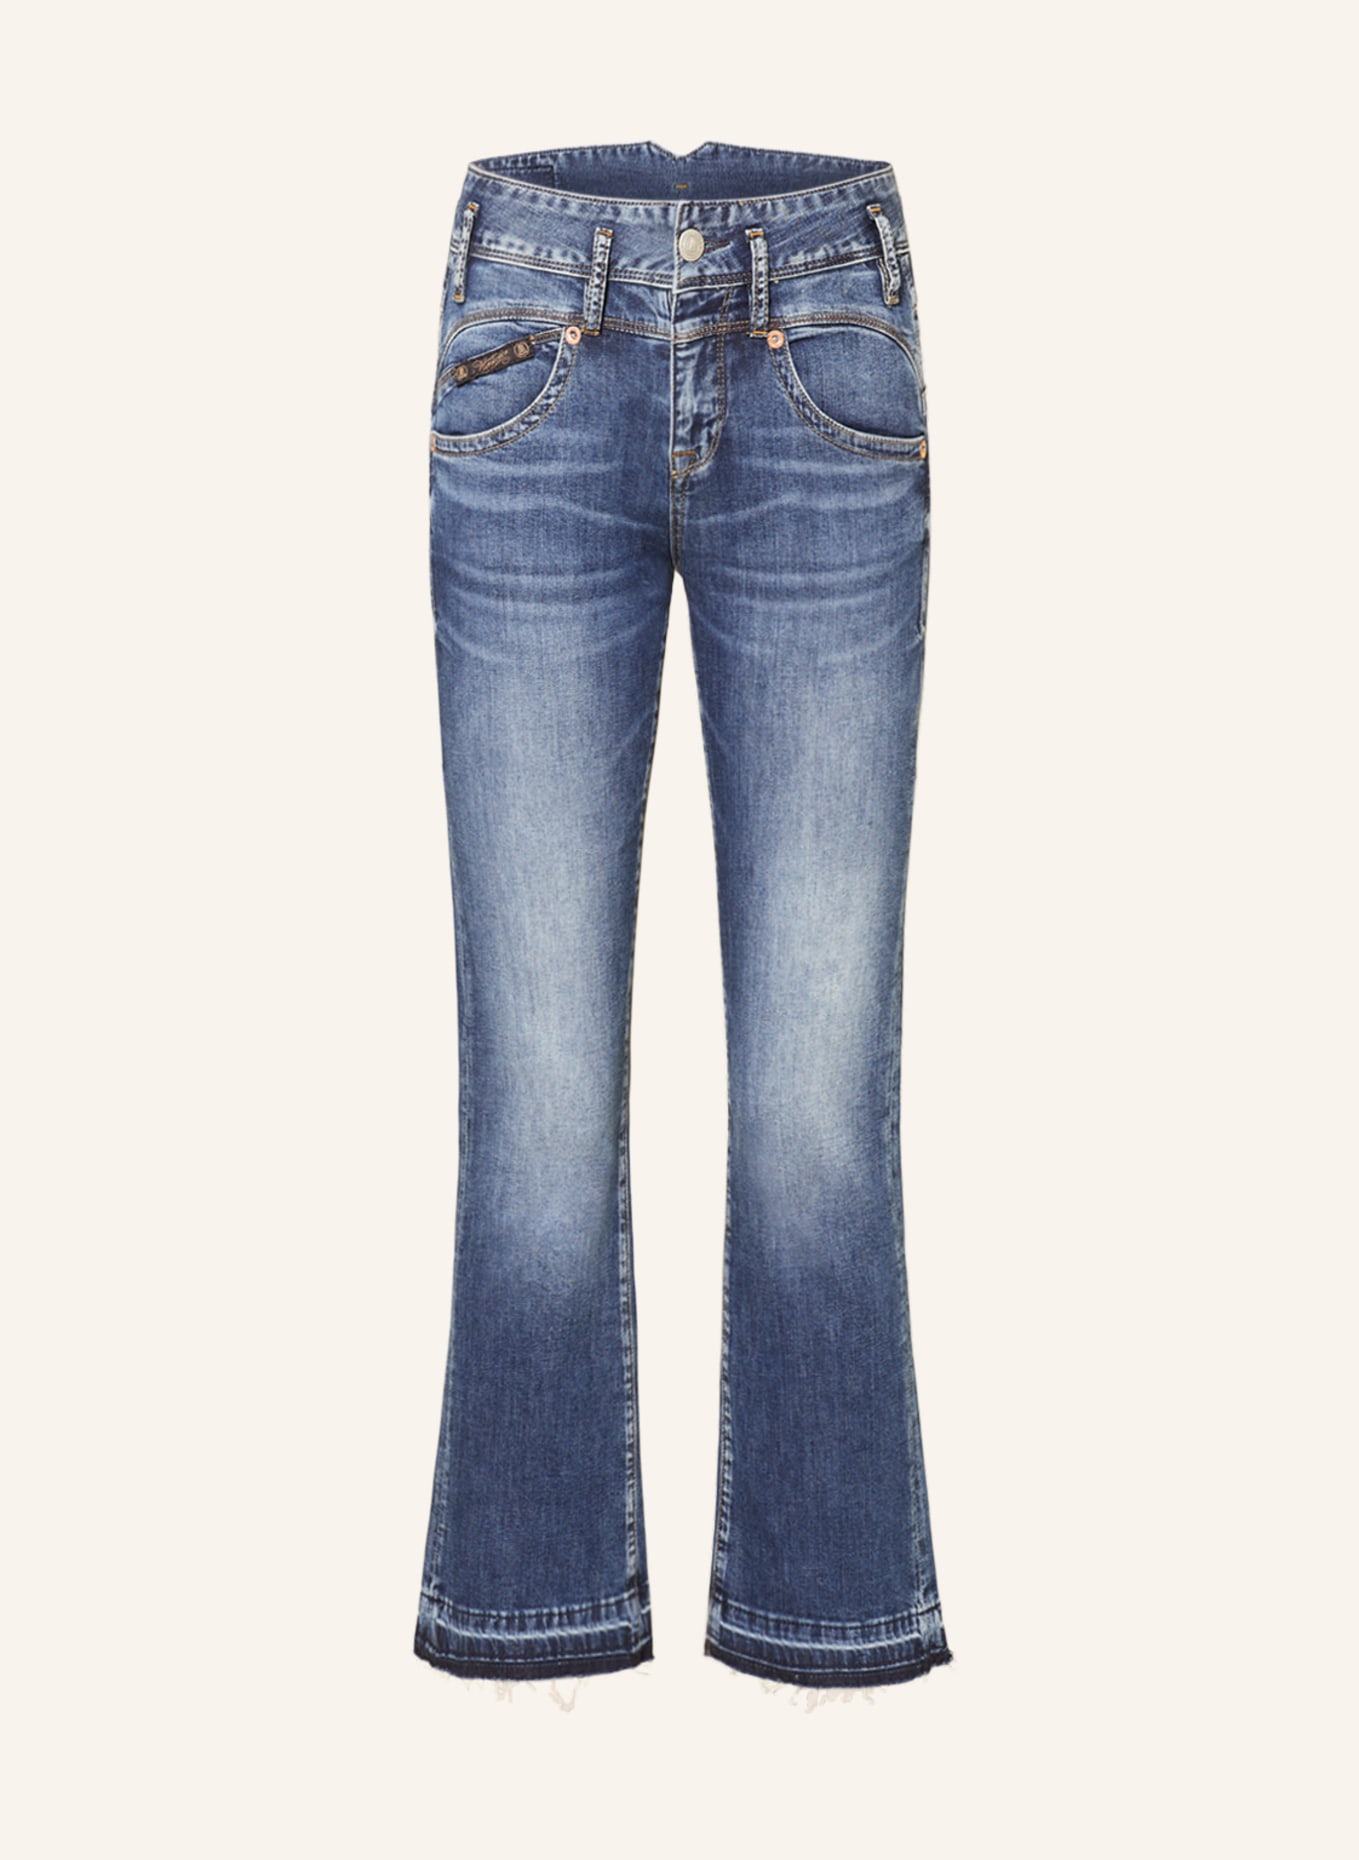 Herrlicher Bootcut Jeans PEARL, Farbe: 957 dolphine (Bild 1)